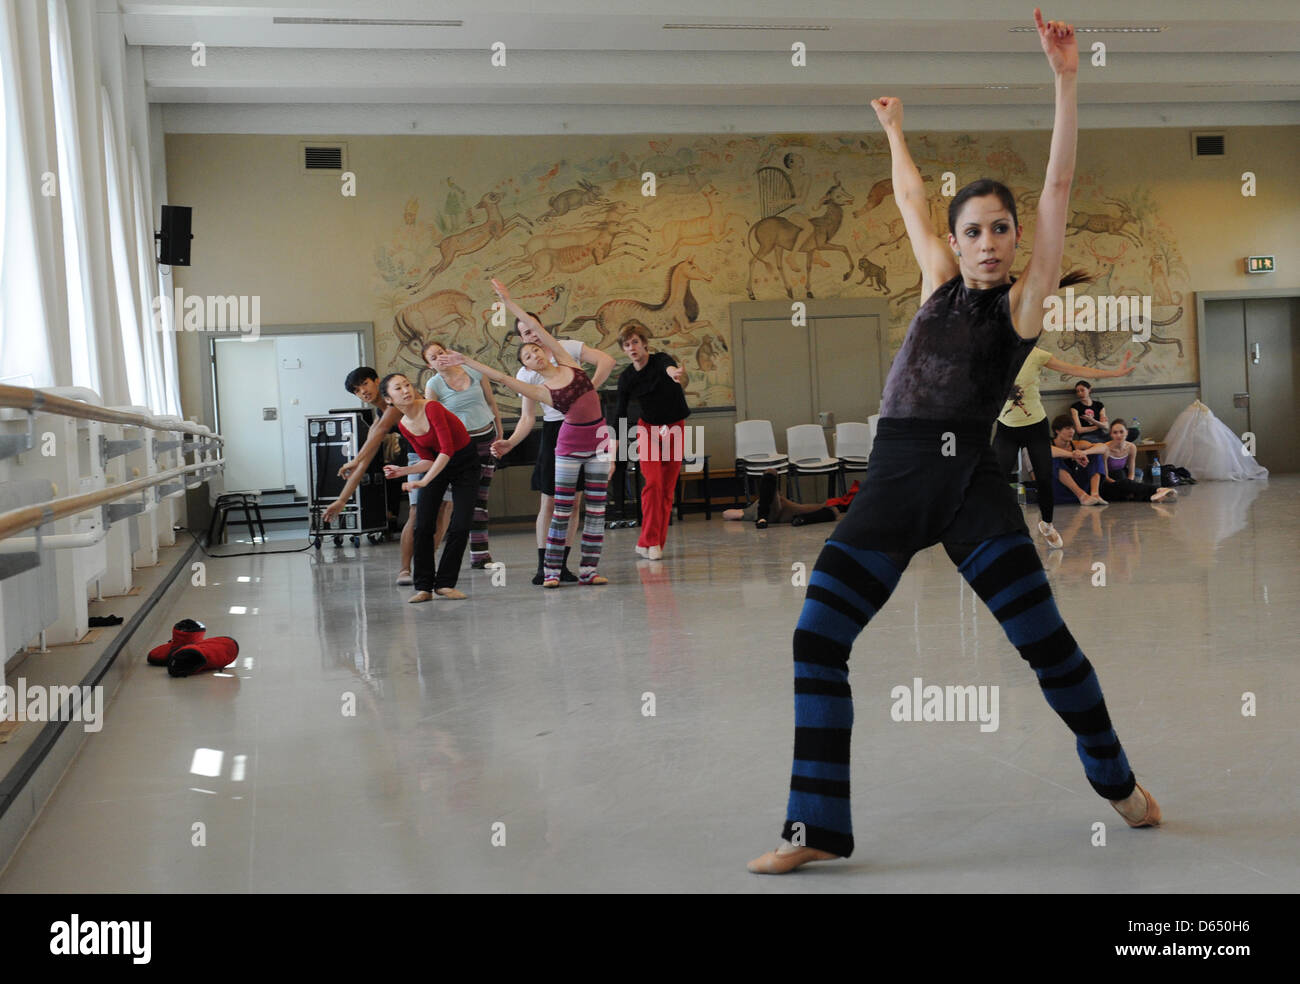 Ballett-Tänzerin Lucia Solari (R) und andere Tänzer führen das Stück "Renku" während eine offene Probe im Ballet Centre in Hamburg, Deutschland, 7. Juni 2012. Die Produktion wurde von aufstrebenden Choreografen Yuka Oishi und Orkan Dann choreographiert. Die Premiere von "Renku" öffnet den 38. Hamburger Ballett-Tage am 17. Juni 2012. Das Ballett ist inspiriert von der japanischen Kunst und Kultur und Stockfoto